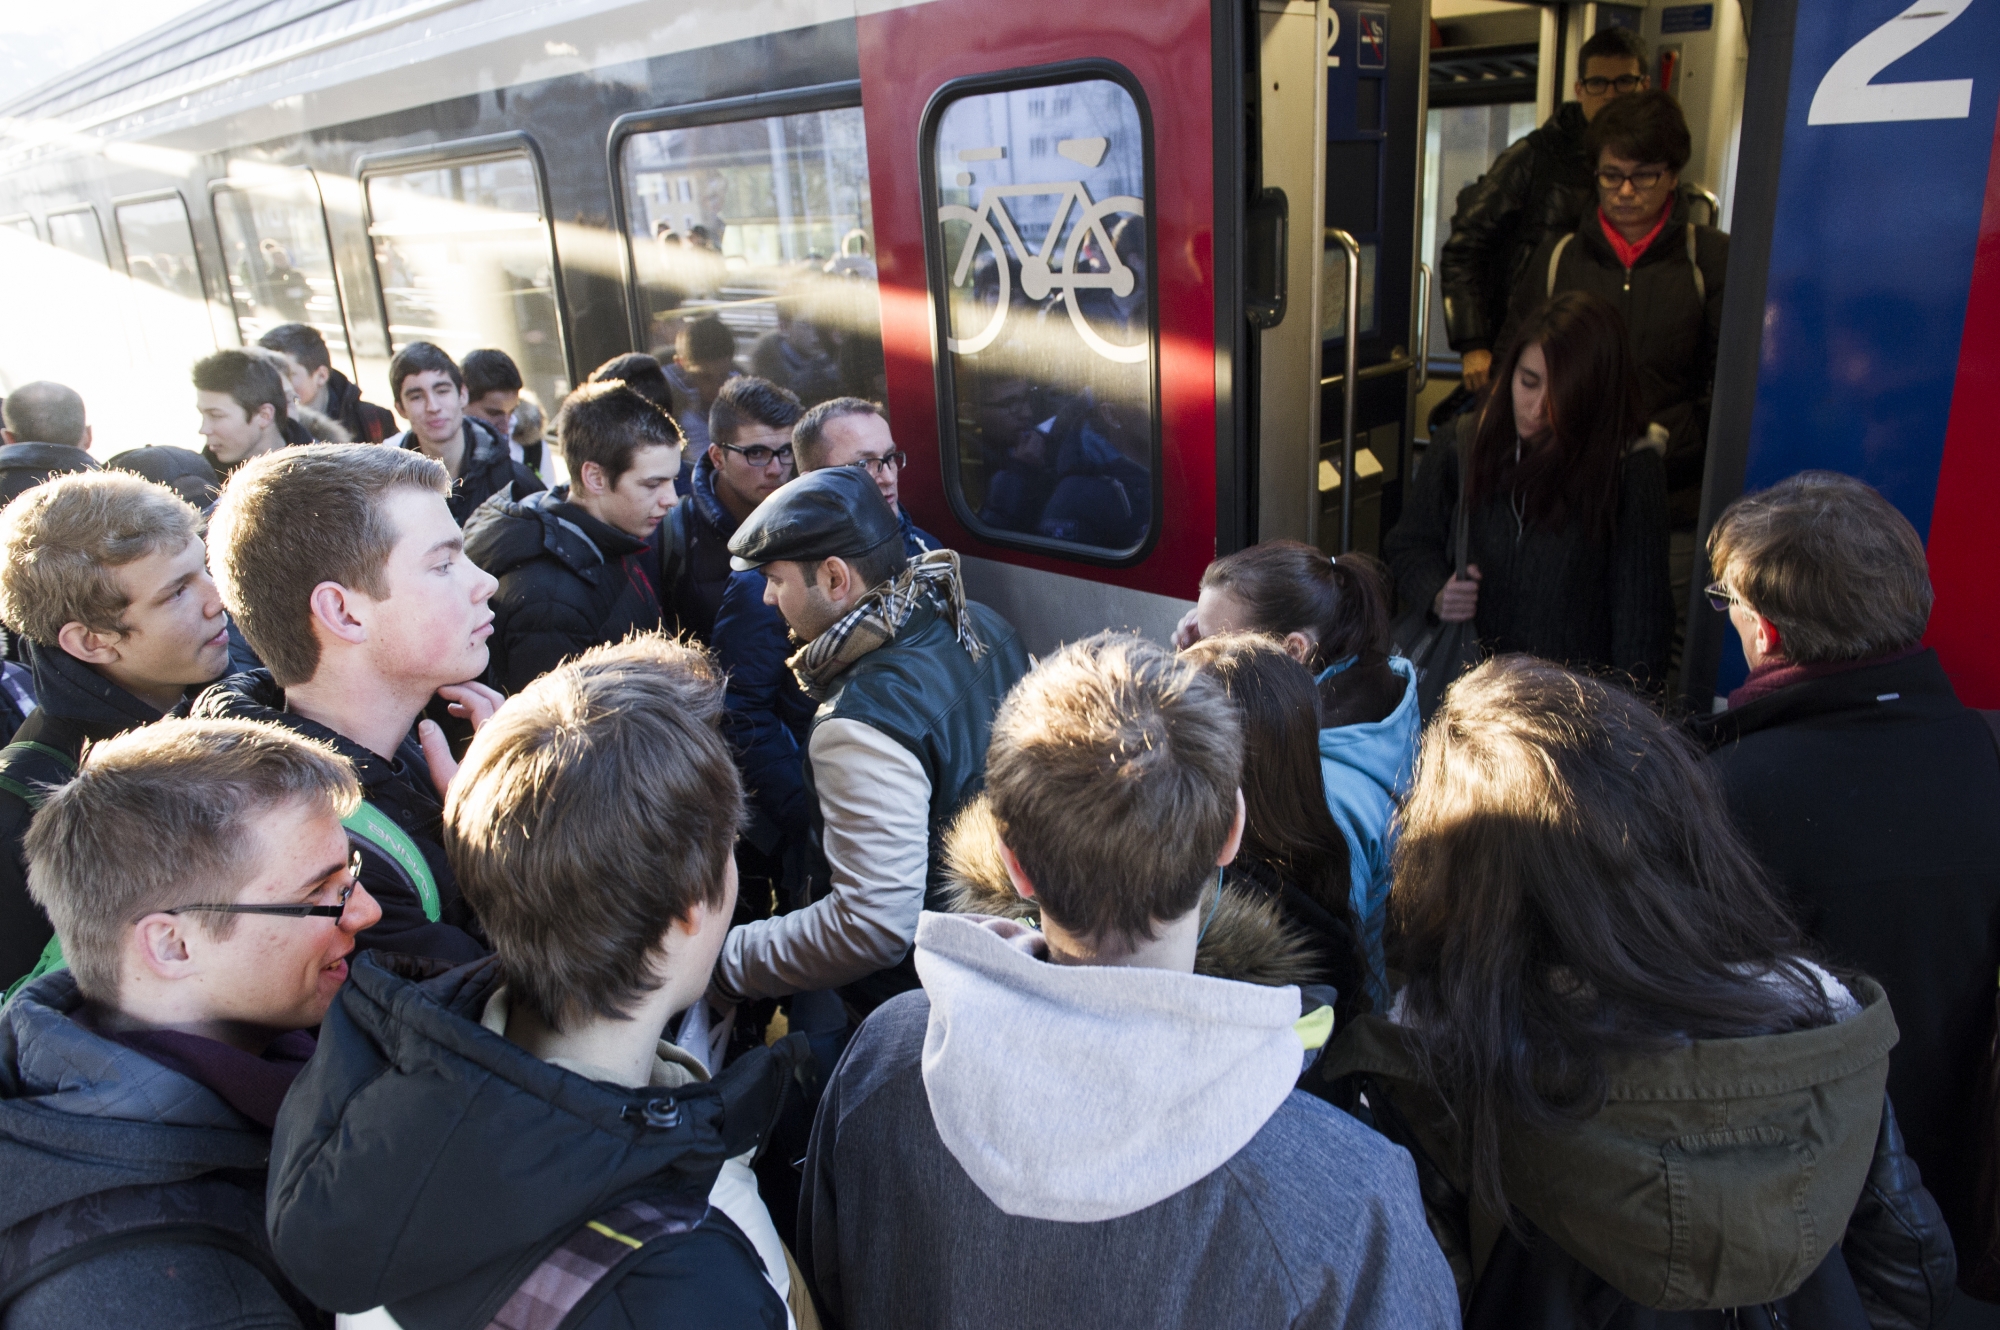 Lundi matin, des dizaines d'étudiants n'ont pas pu monter dans le train bondé à Collombey-Muraz (image d'illustration).